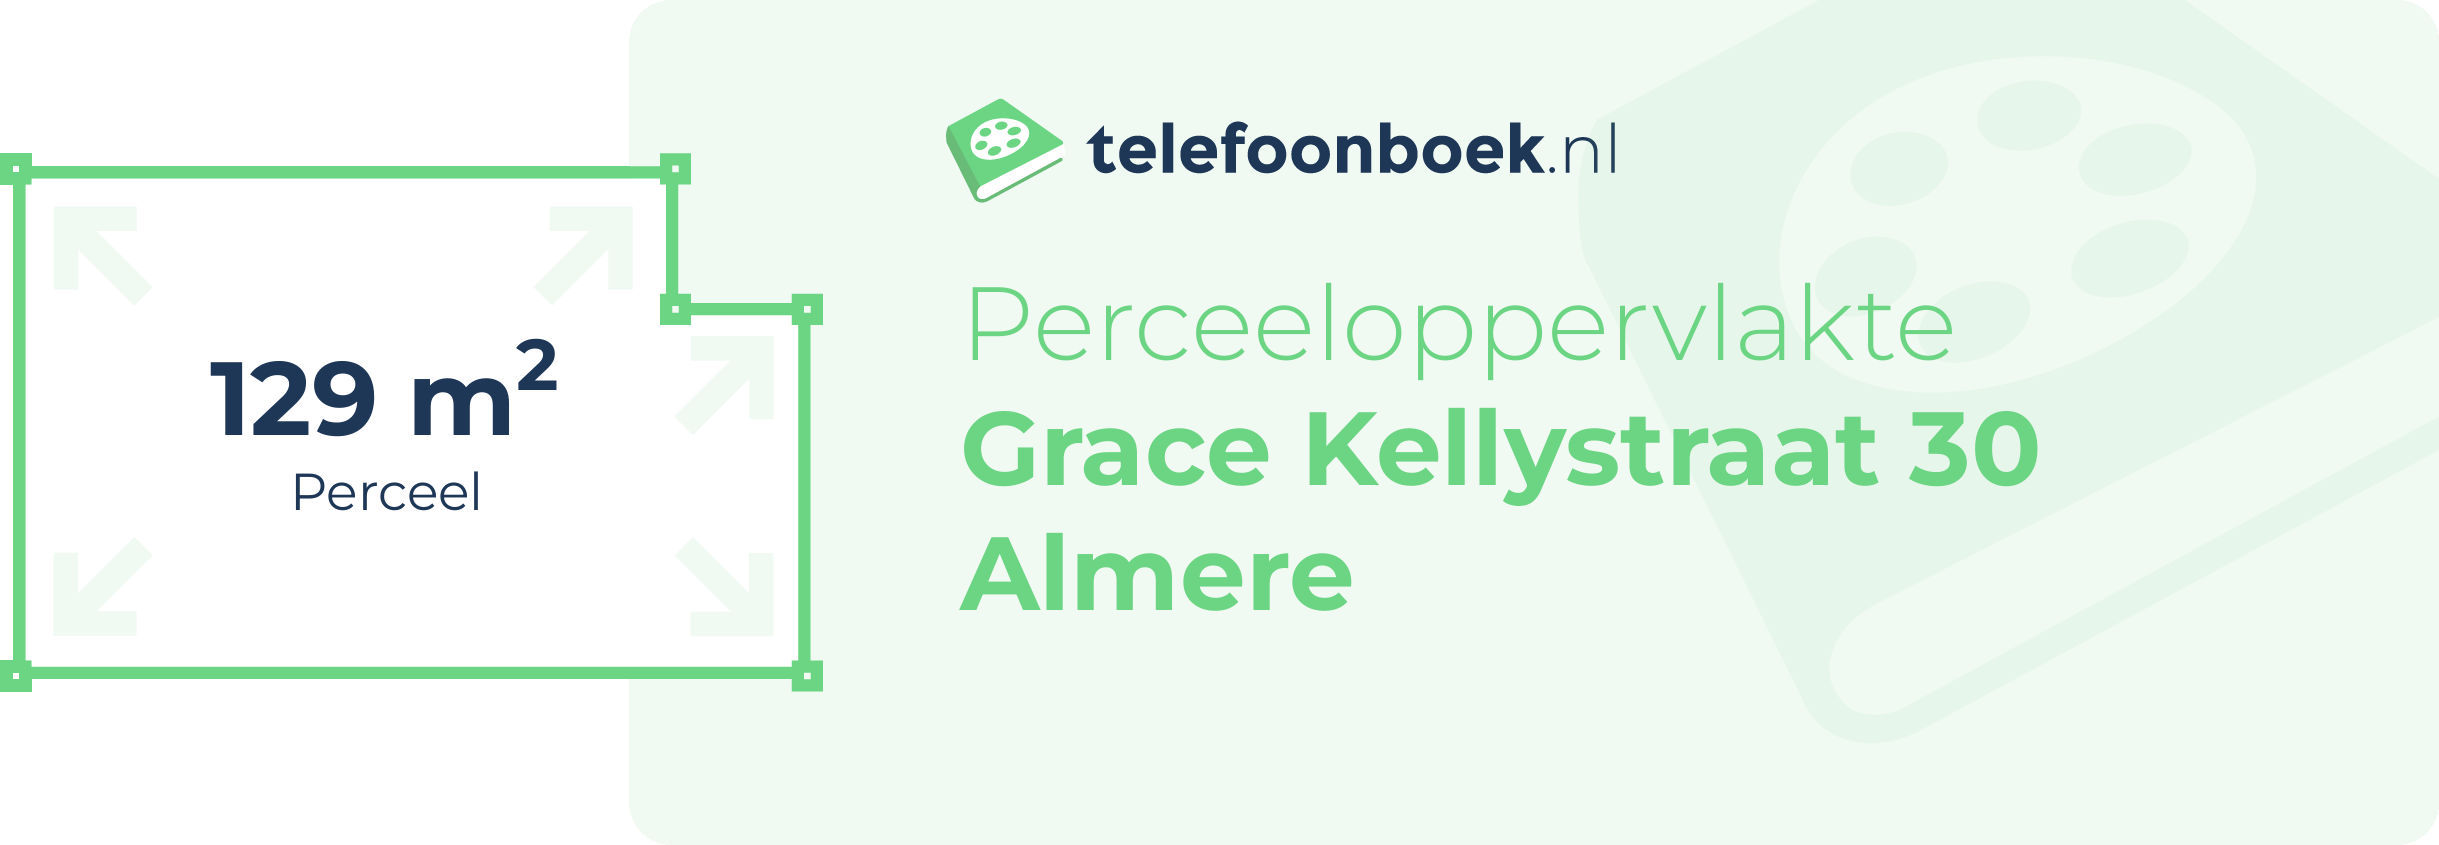 Perceeloppervlakte Grace Kellystraat 30 Almere